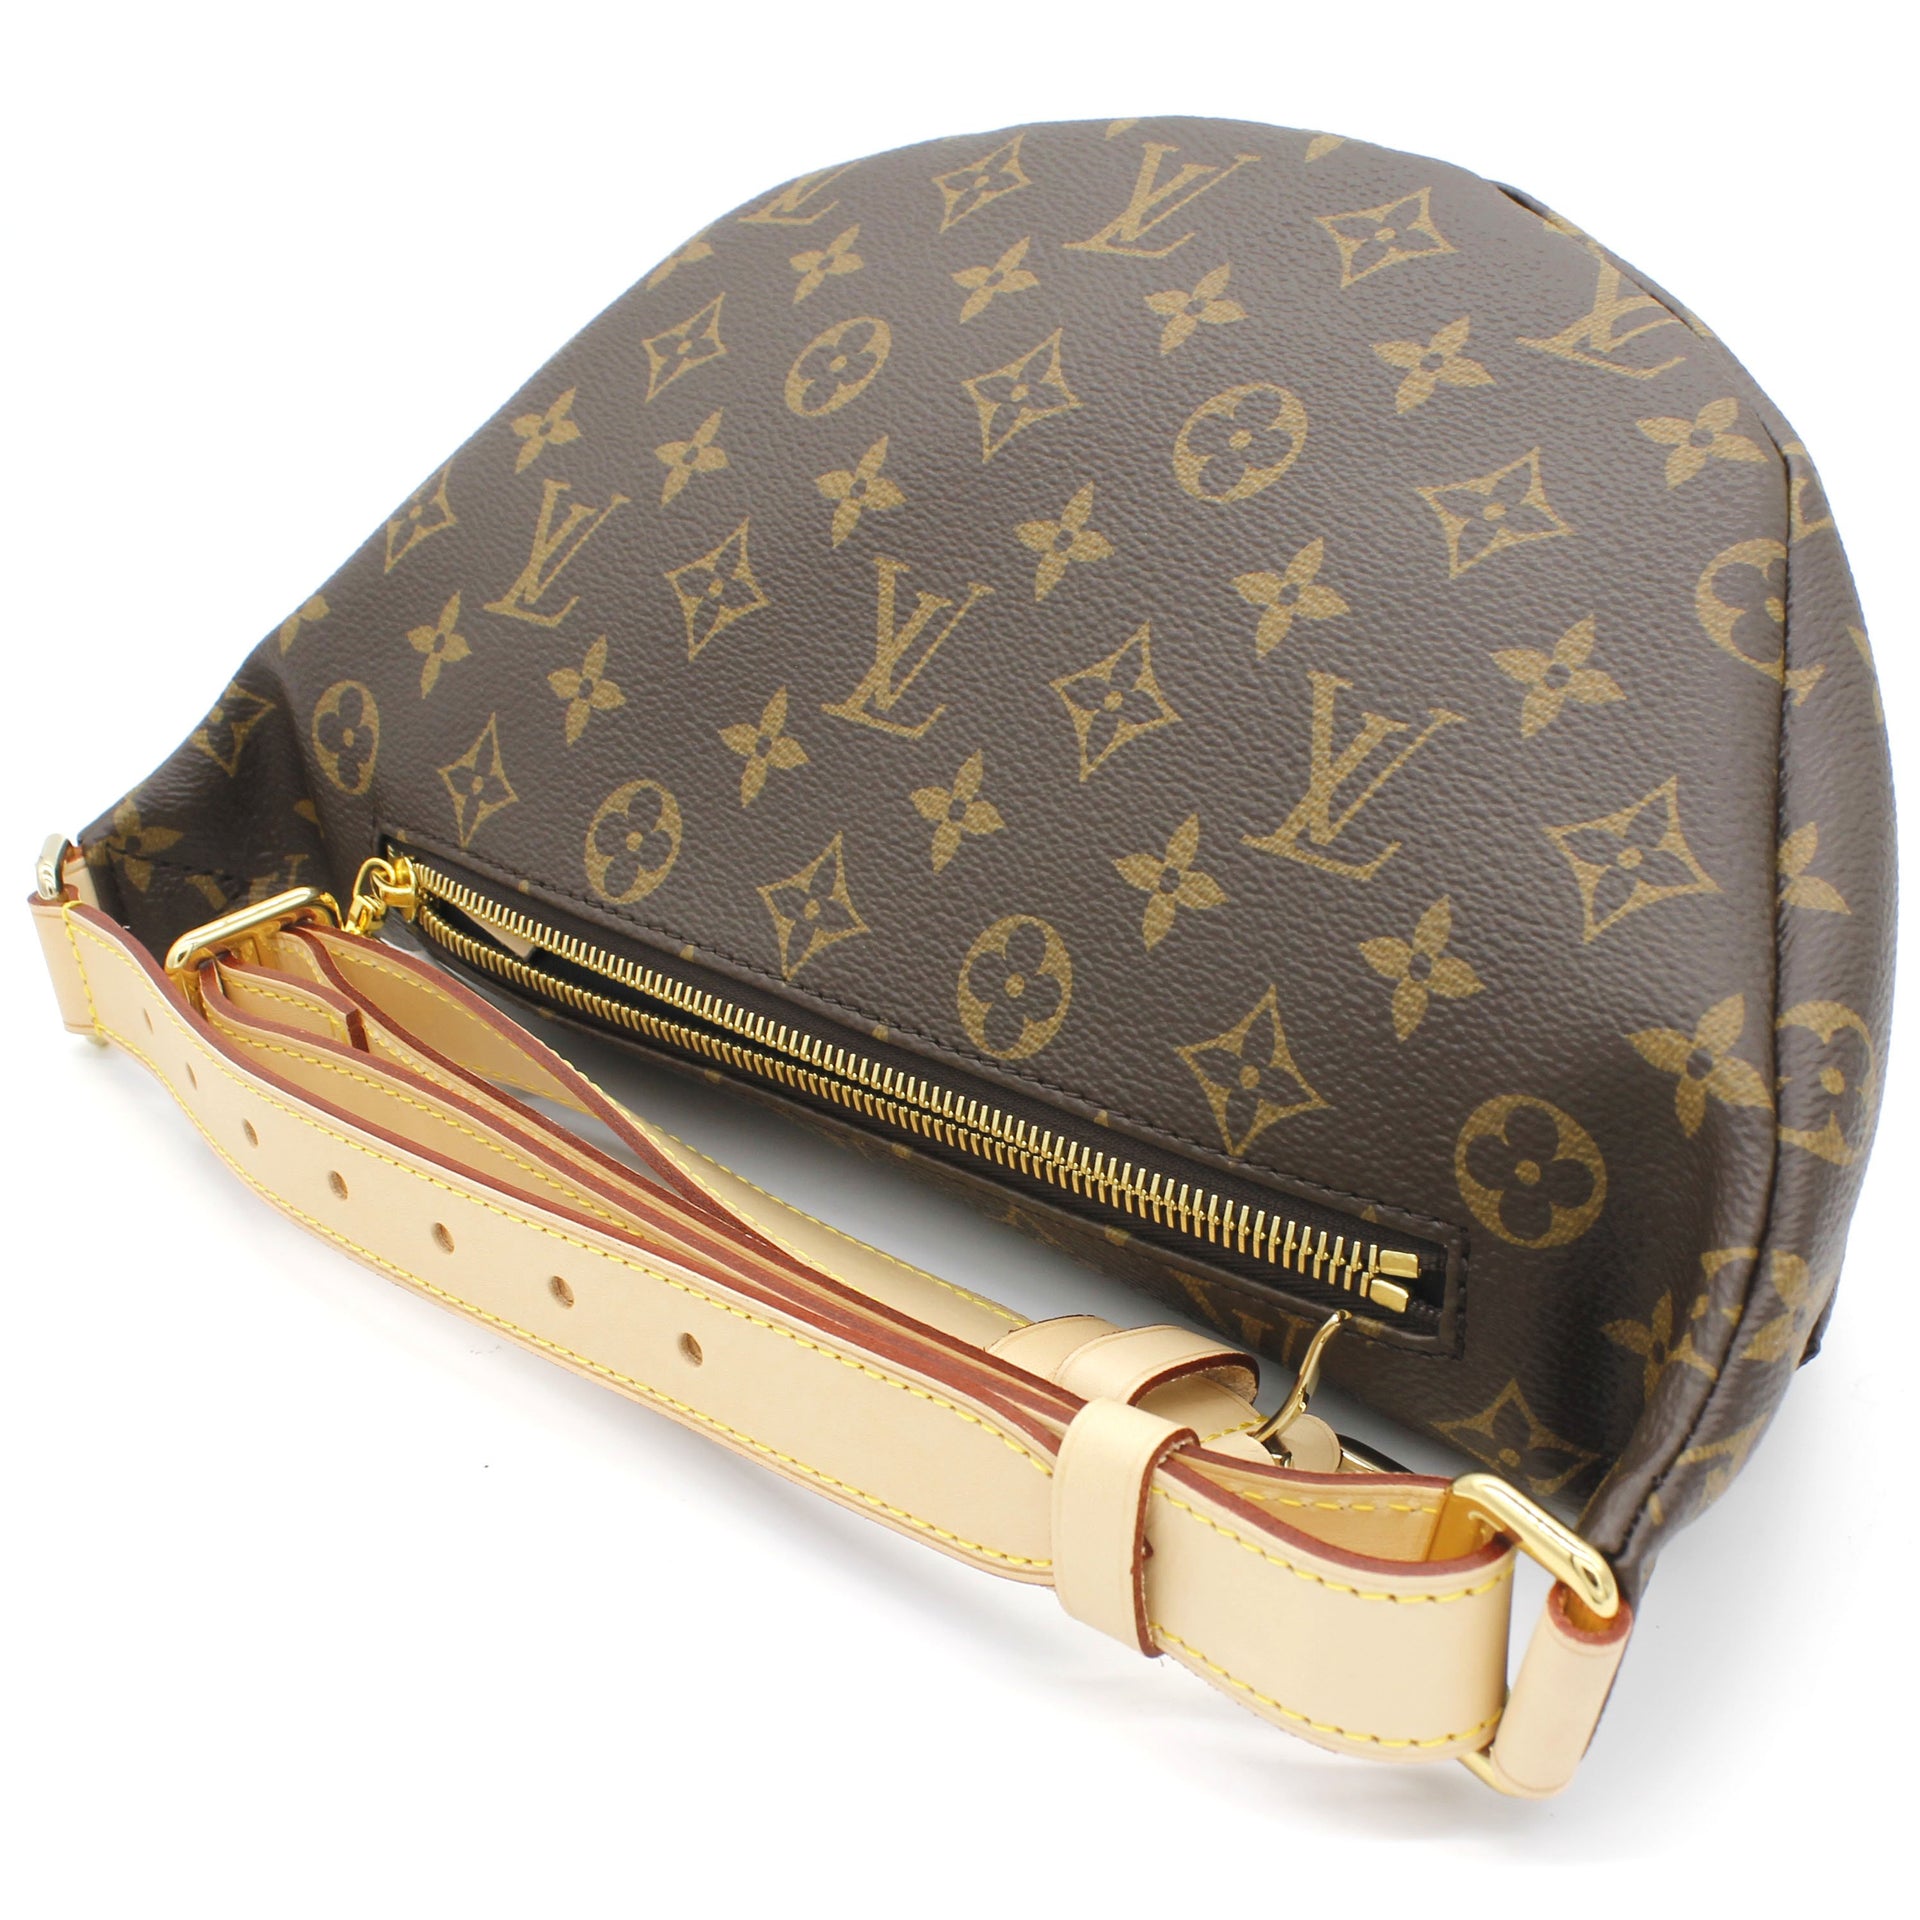 Louis Vuitton Monogram Canvas Bumbag Shoulder Bag